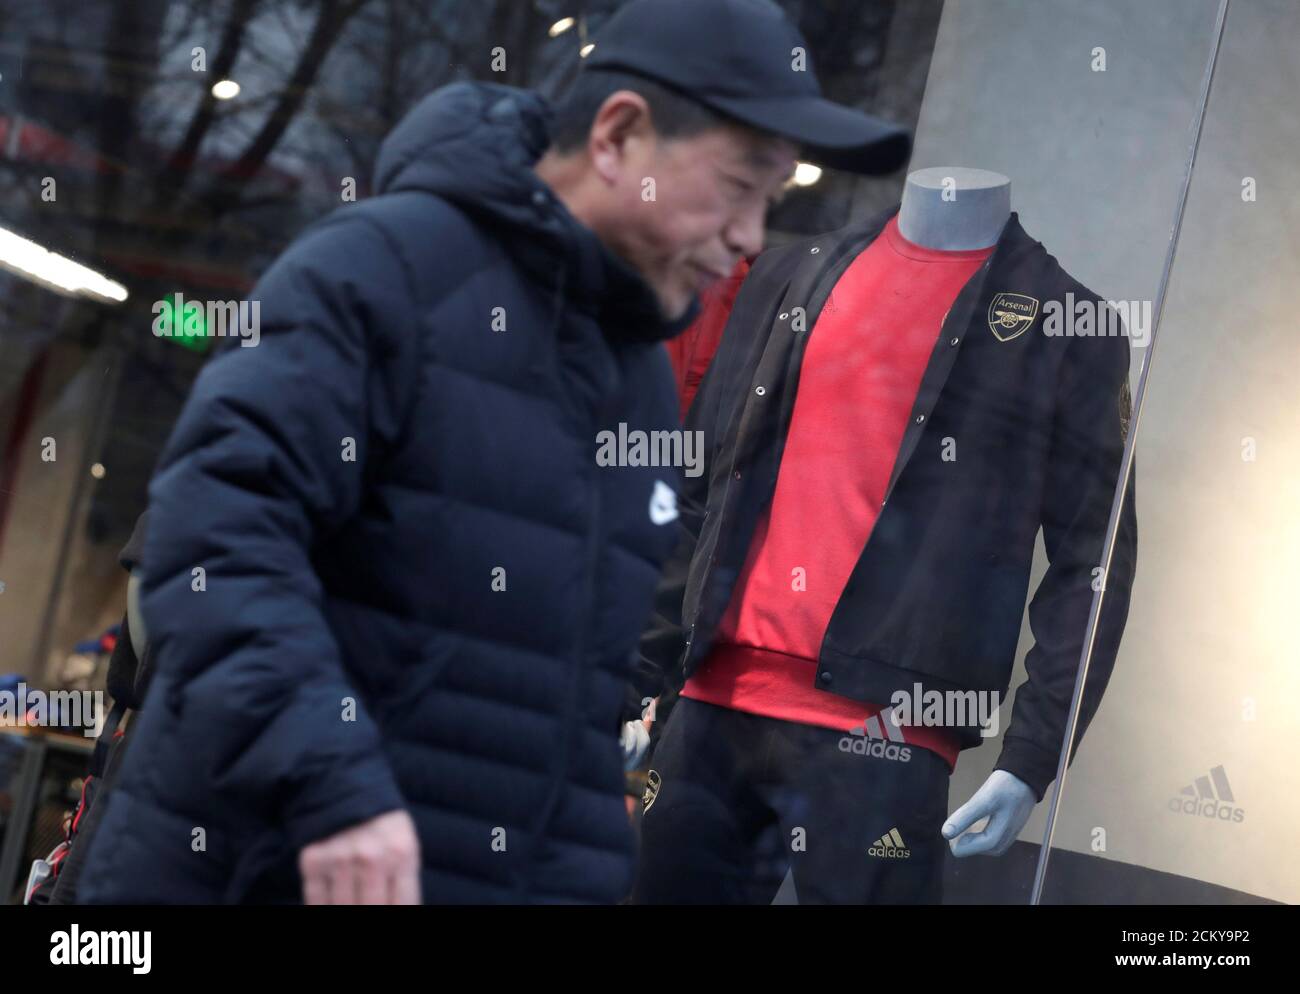 Un hombre por una ventana de la tienda Adidas donde un modelo está vestido con ropa deportiva con el logotipo del Arsenal del club de fútbol inglés, en Beijing, China 16